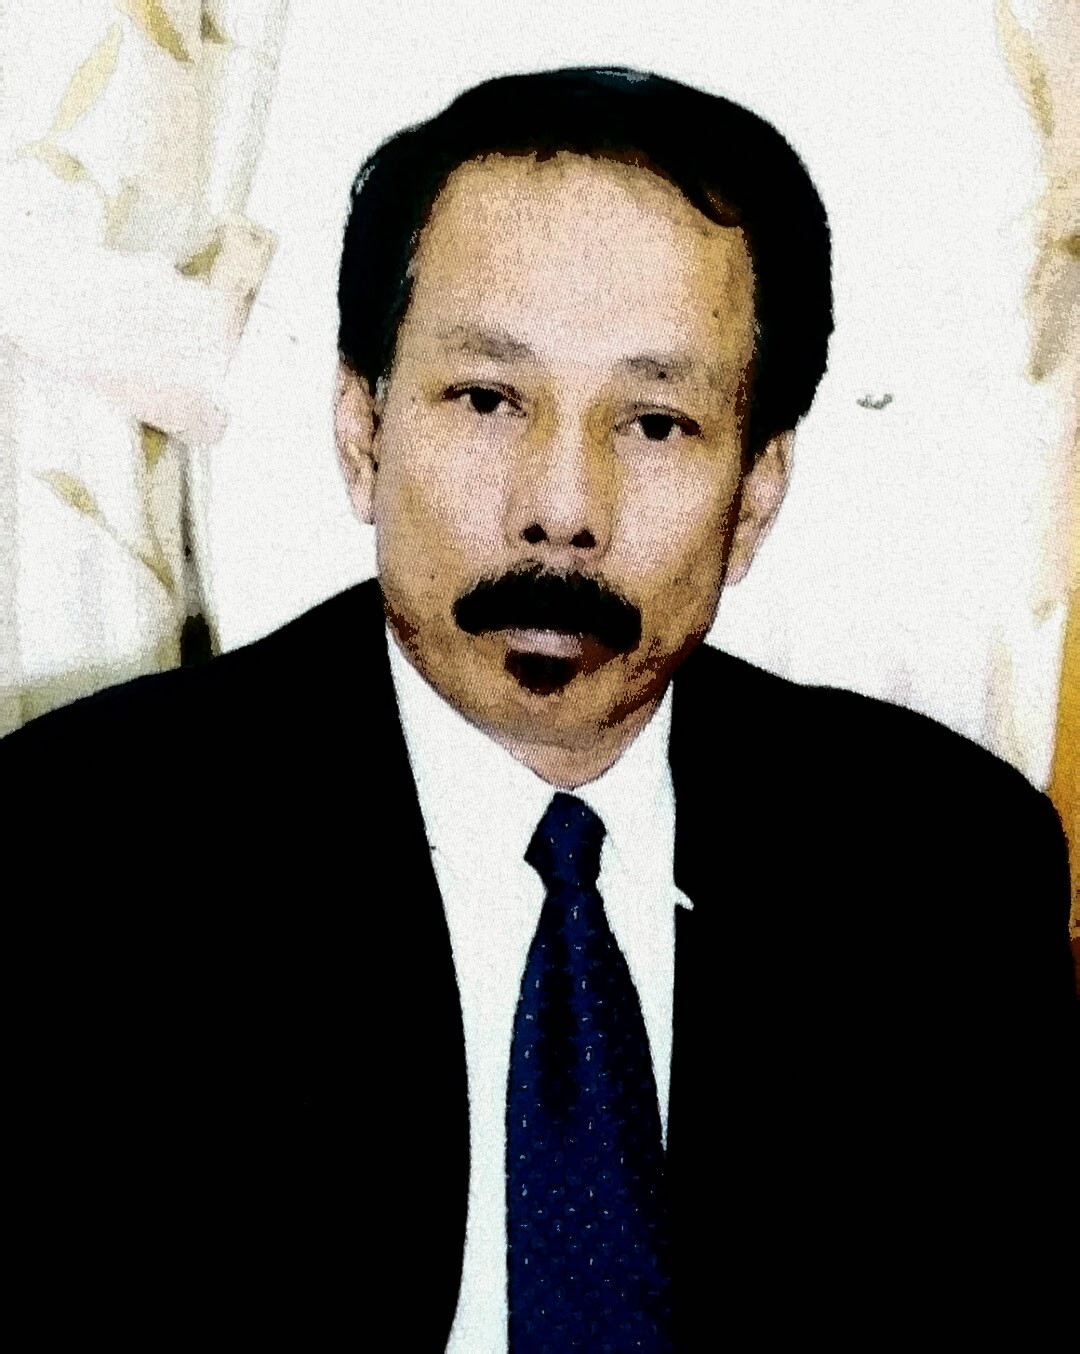 YB. Dato' Wira Hj Khazali b. Din